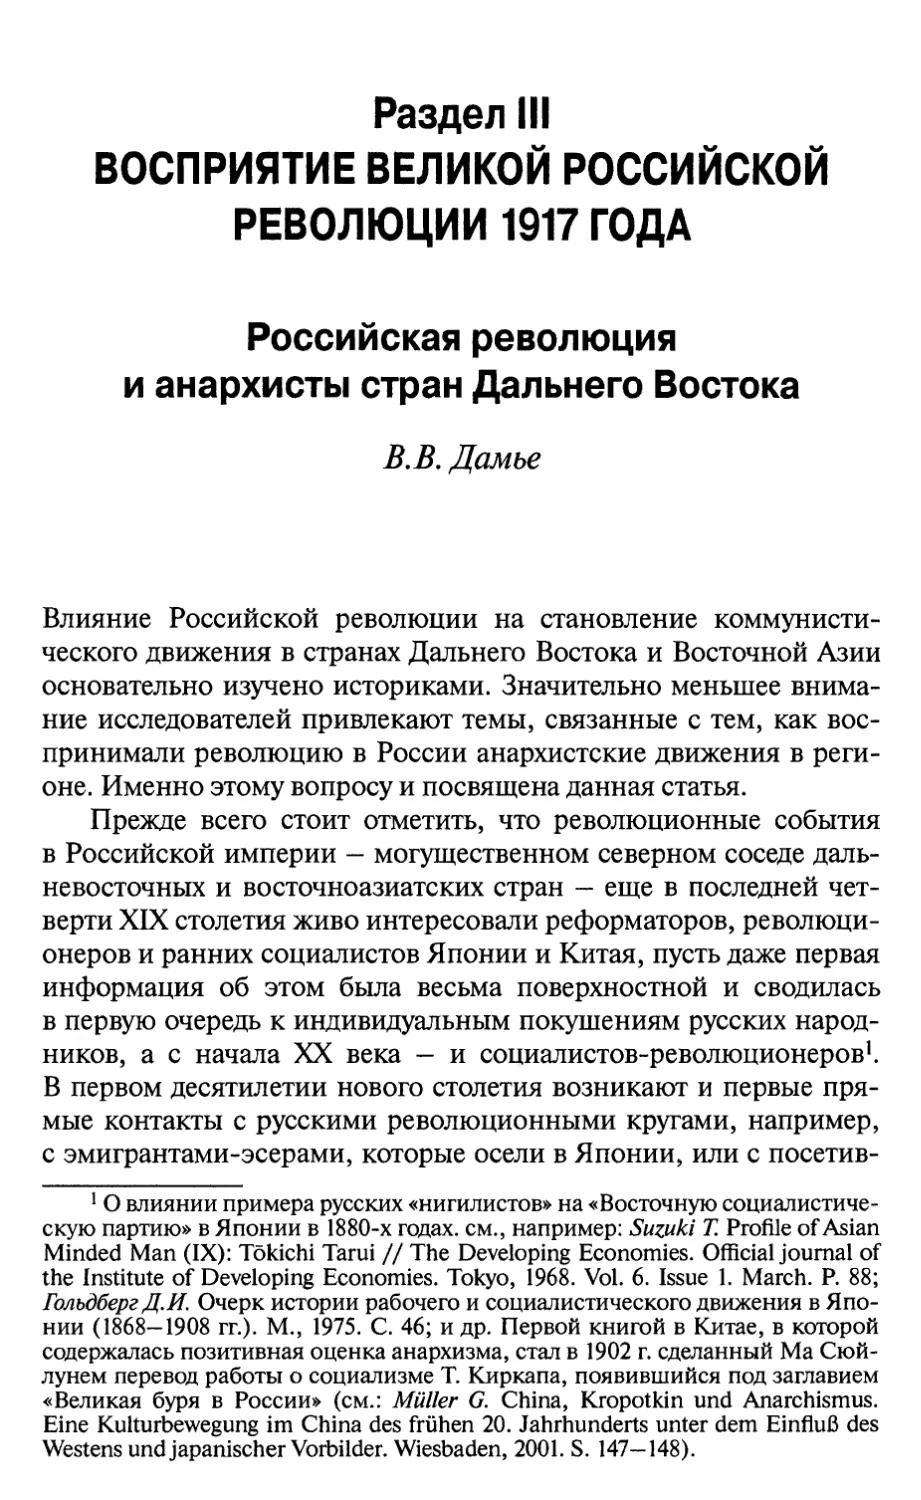 Раздел III. ВОСПРИЯТИЕ ВЕЛИКОЙ РОССИЙСКОЙ РЕВОЛЮЦИИ 1917 ГОДА